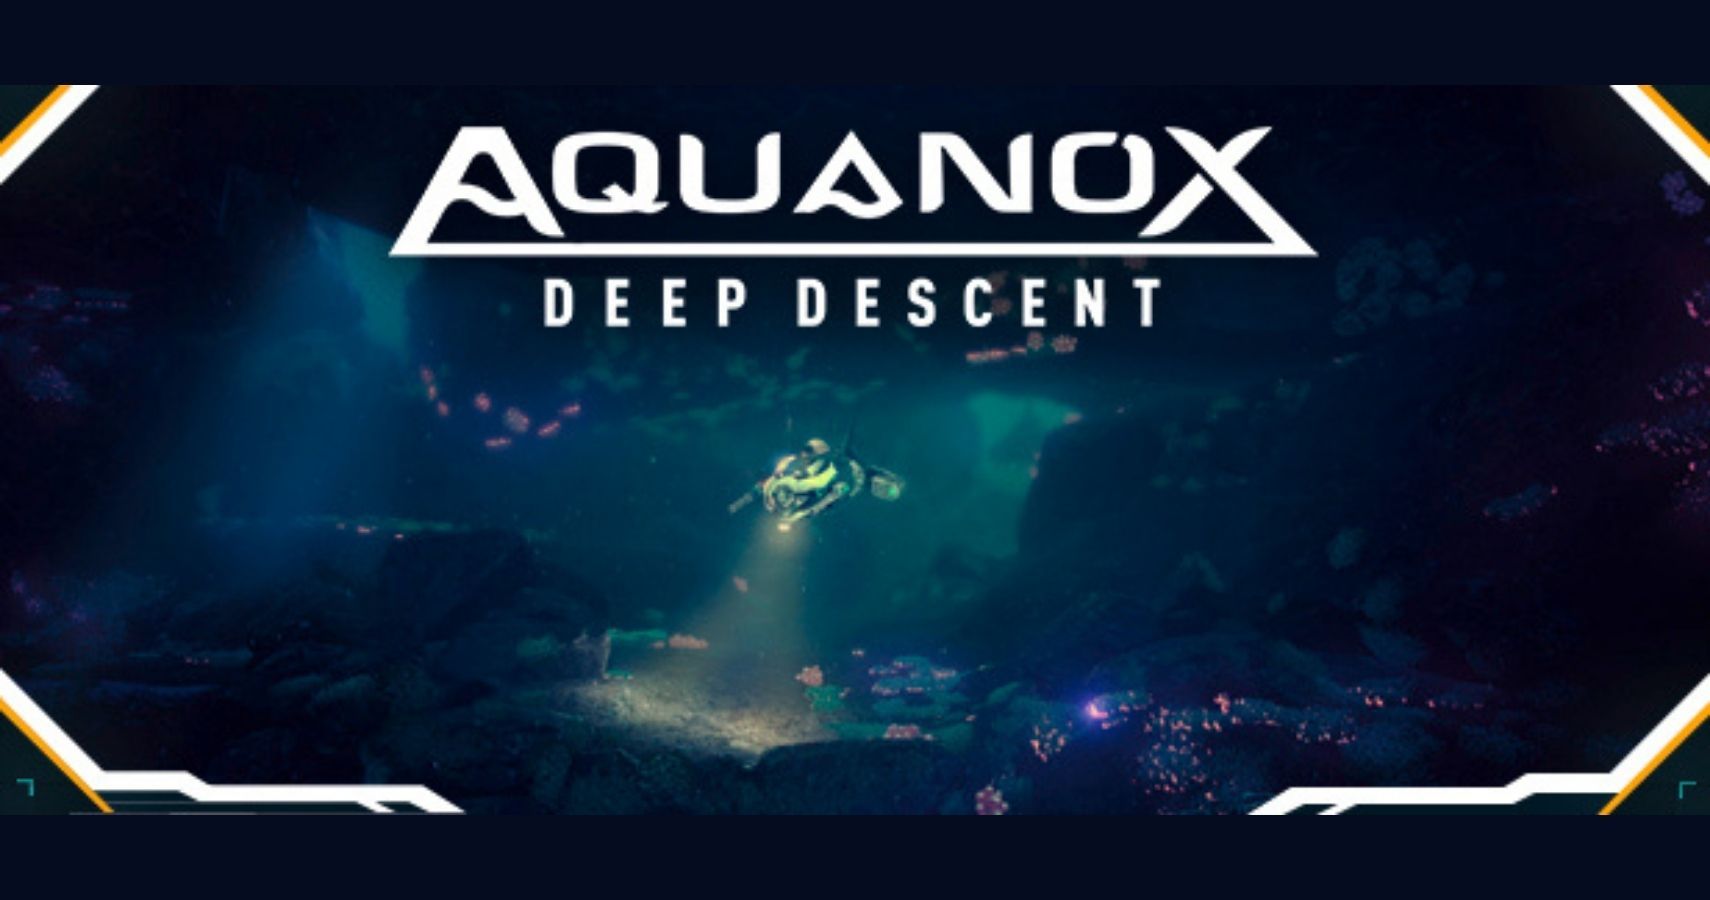 Aquanox Deep Descent Launch Announcement feature image